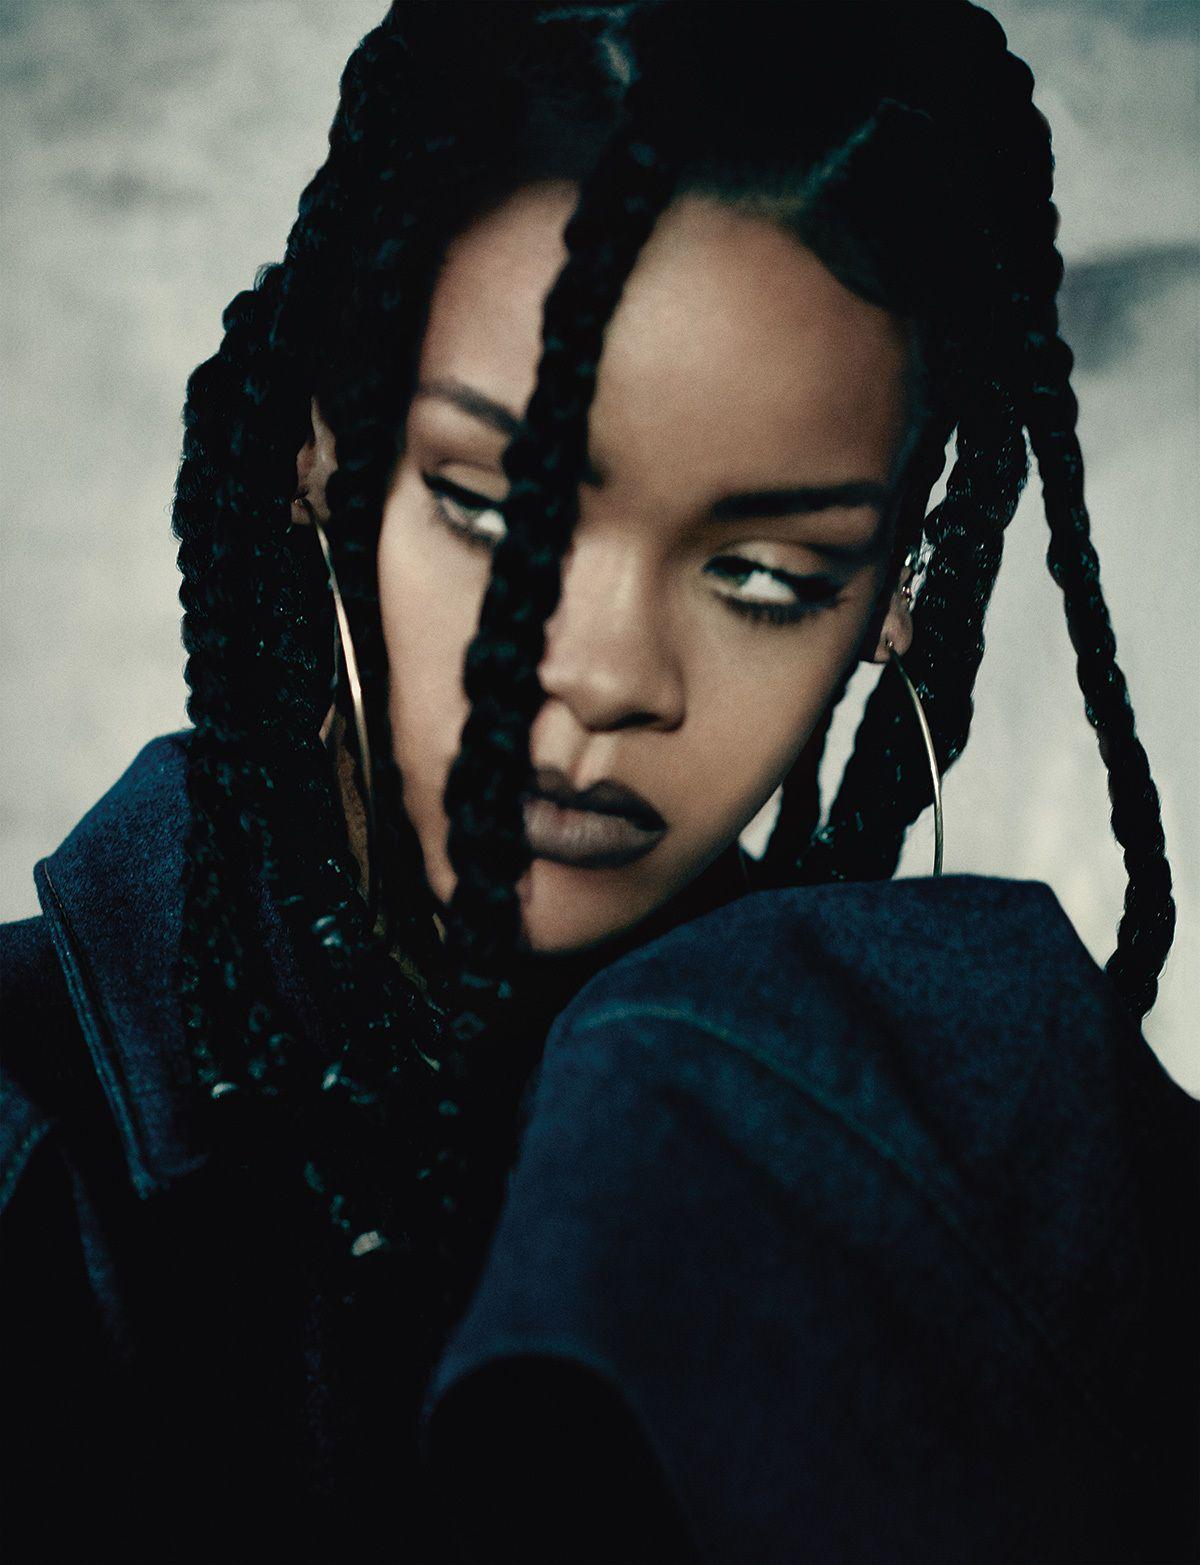 Photo №64471 Rihanna.